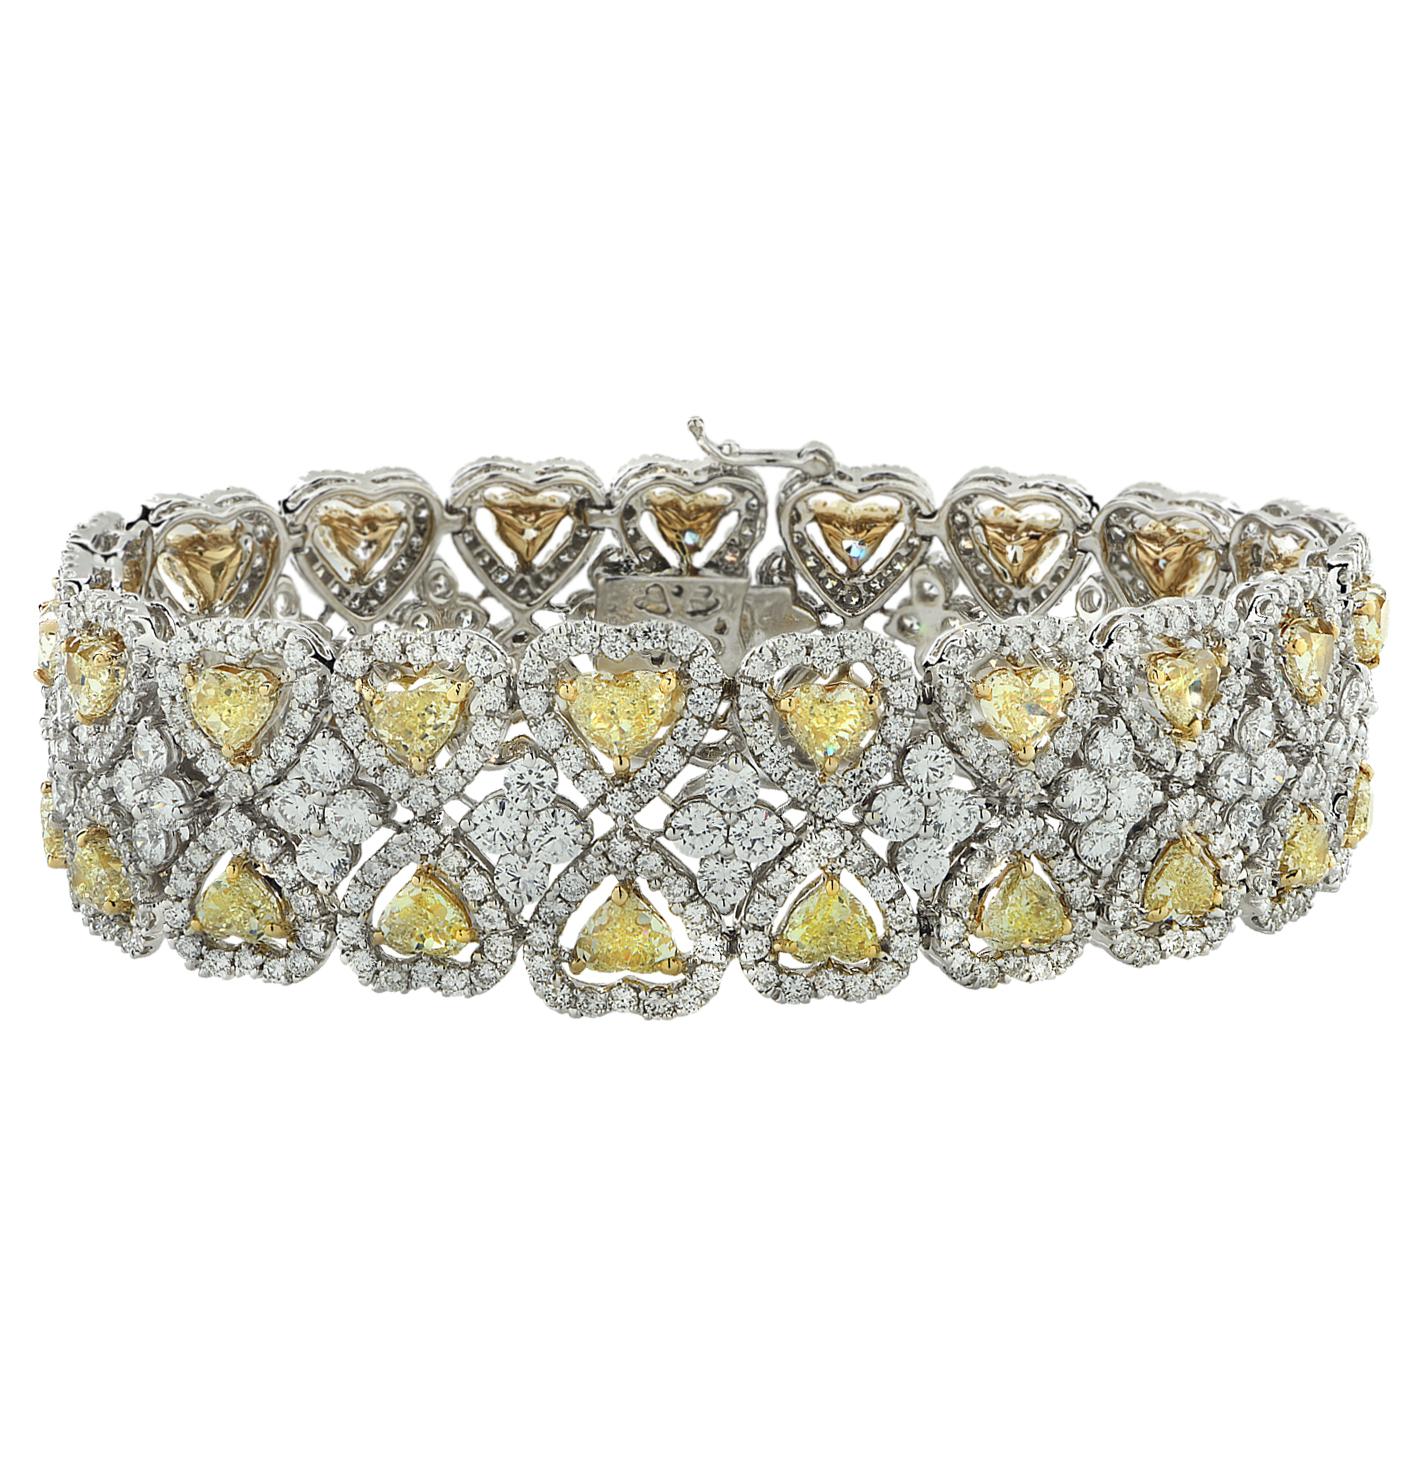 Exquisites Diamantarmband aus 18 Karat Weiß- und Gelbgold mit 38 gelben Diamanten in Herzform mit einem Gesamtgewicht von ca. 13,50 Karat, Reinheit VS, und 612 runden Diamanten im Brillantschliff mit einem Gesamtgewicht von ca. 12,54 Karat, Farbe